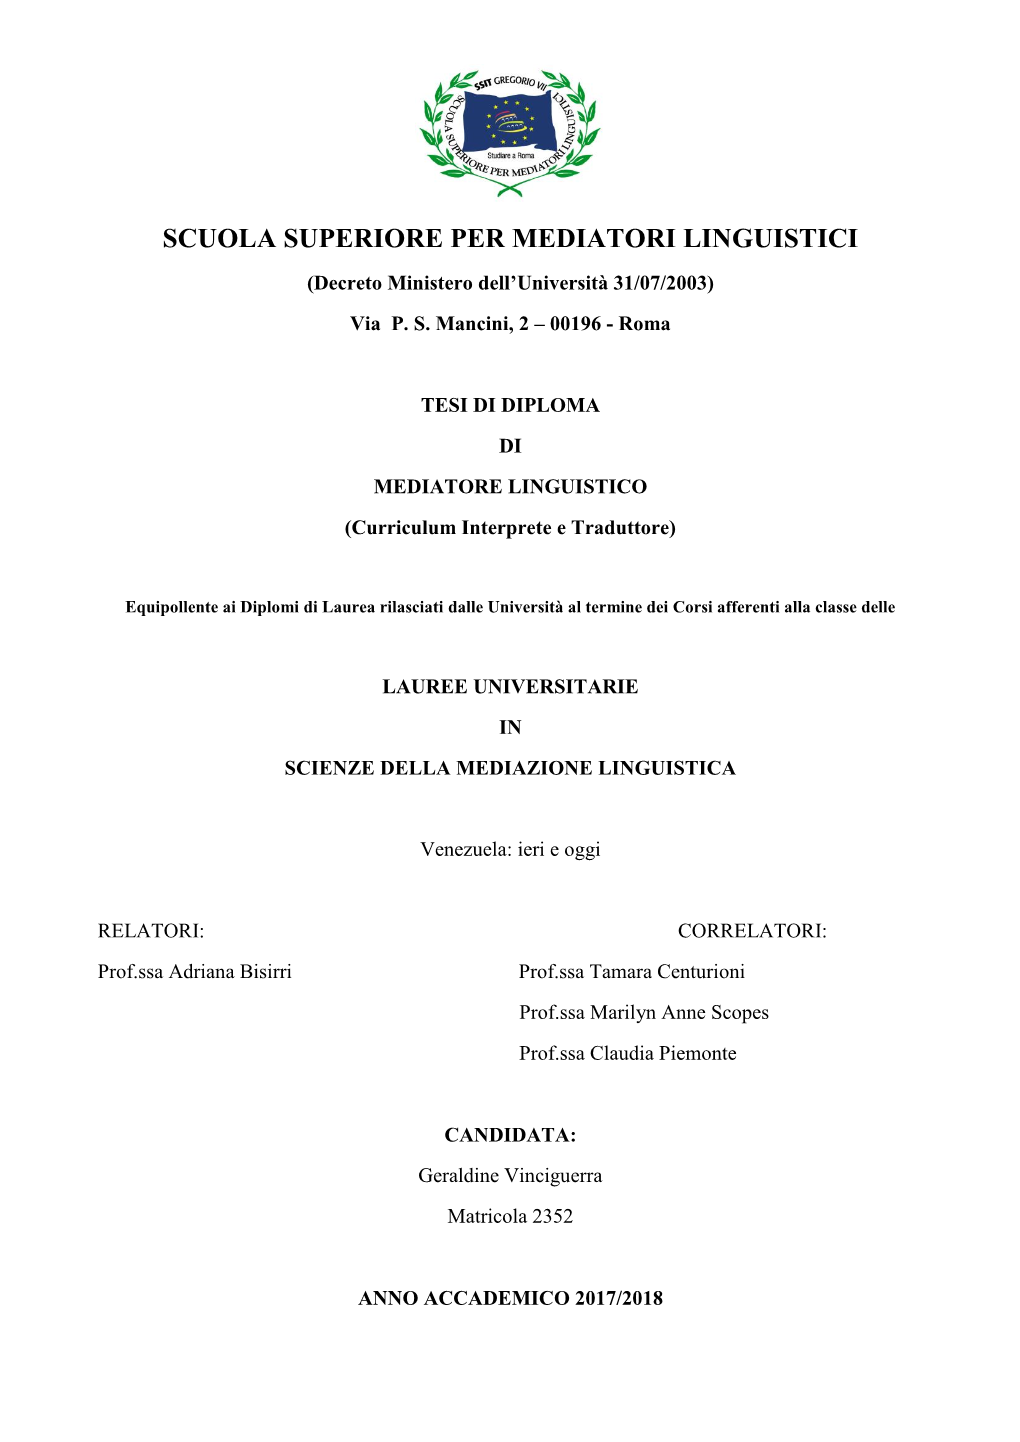 SCUOLA SUPERIORE PER MEDIATORI LINGUISTICI (Decreto Ministero Dell’Università 31/07/2003) Via P